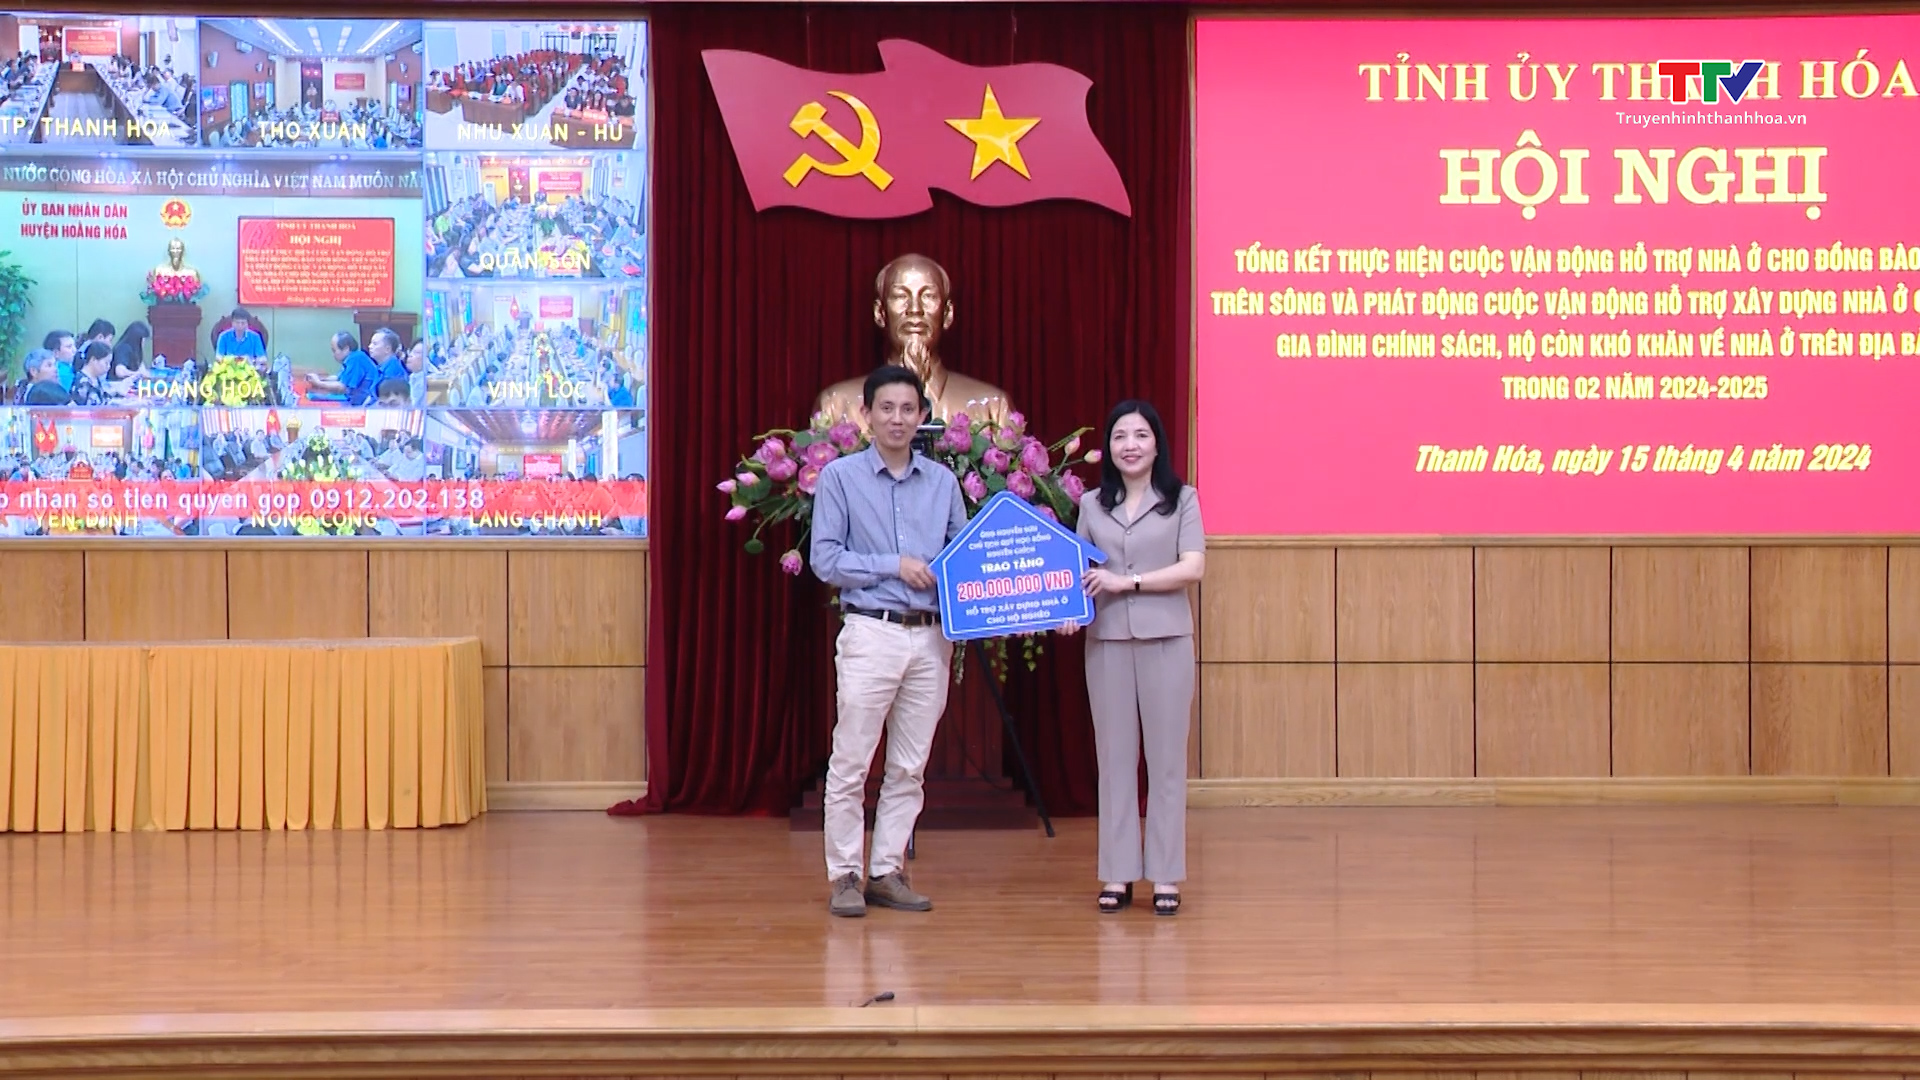 Câu lạc bộ Doanh nhân Thanh Hóa tại thành phố Hồ Chí Minh và phía Nam góp sức xây dựng nhà đại đoàn kết cho hộ nghèo- Ảnh 6.